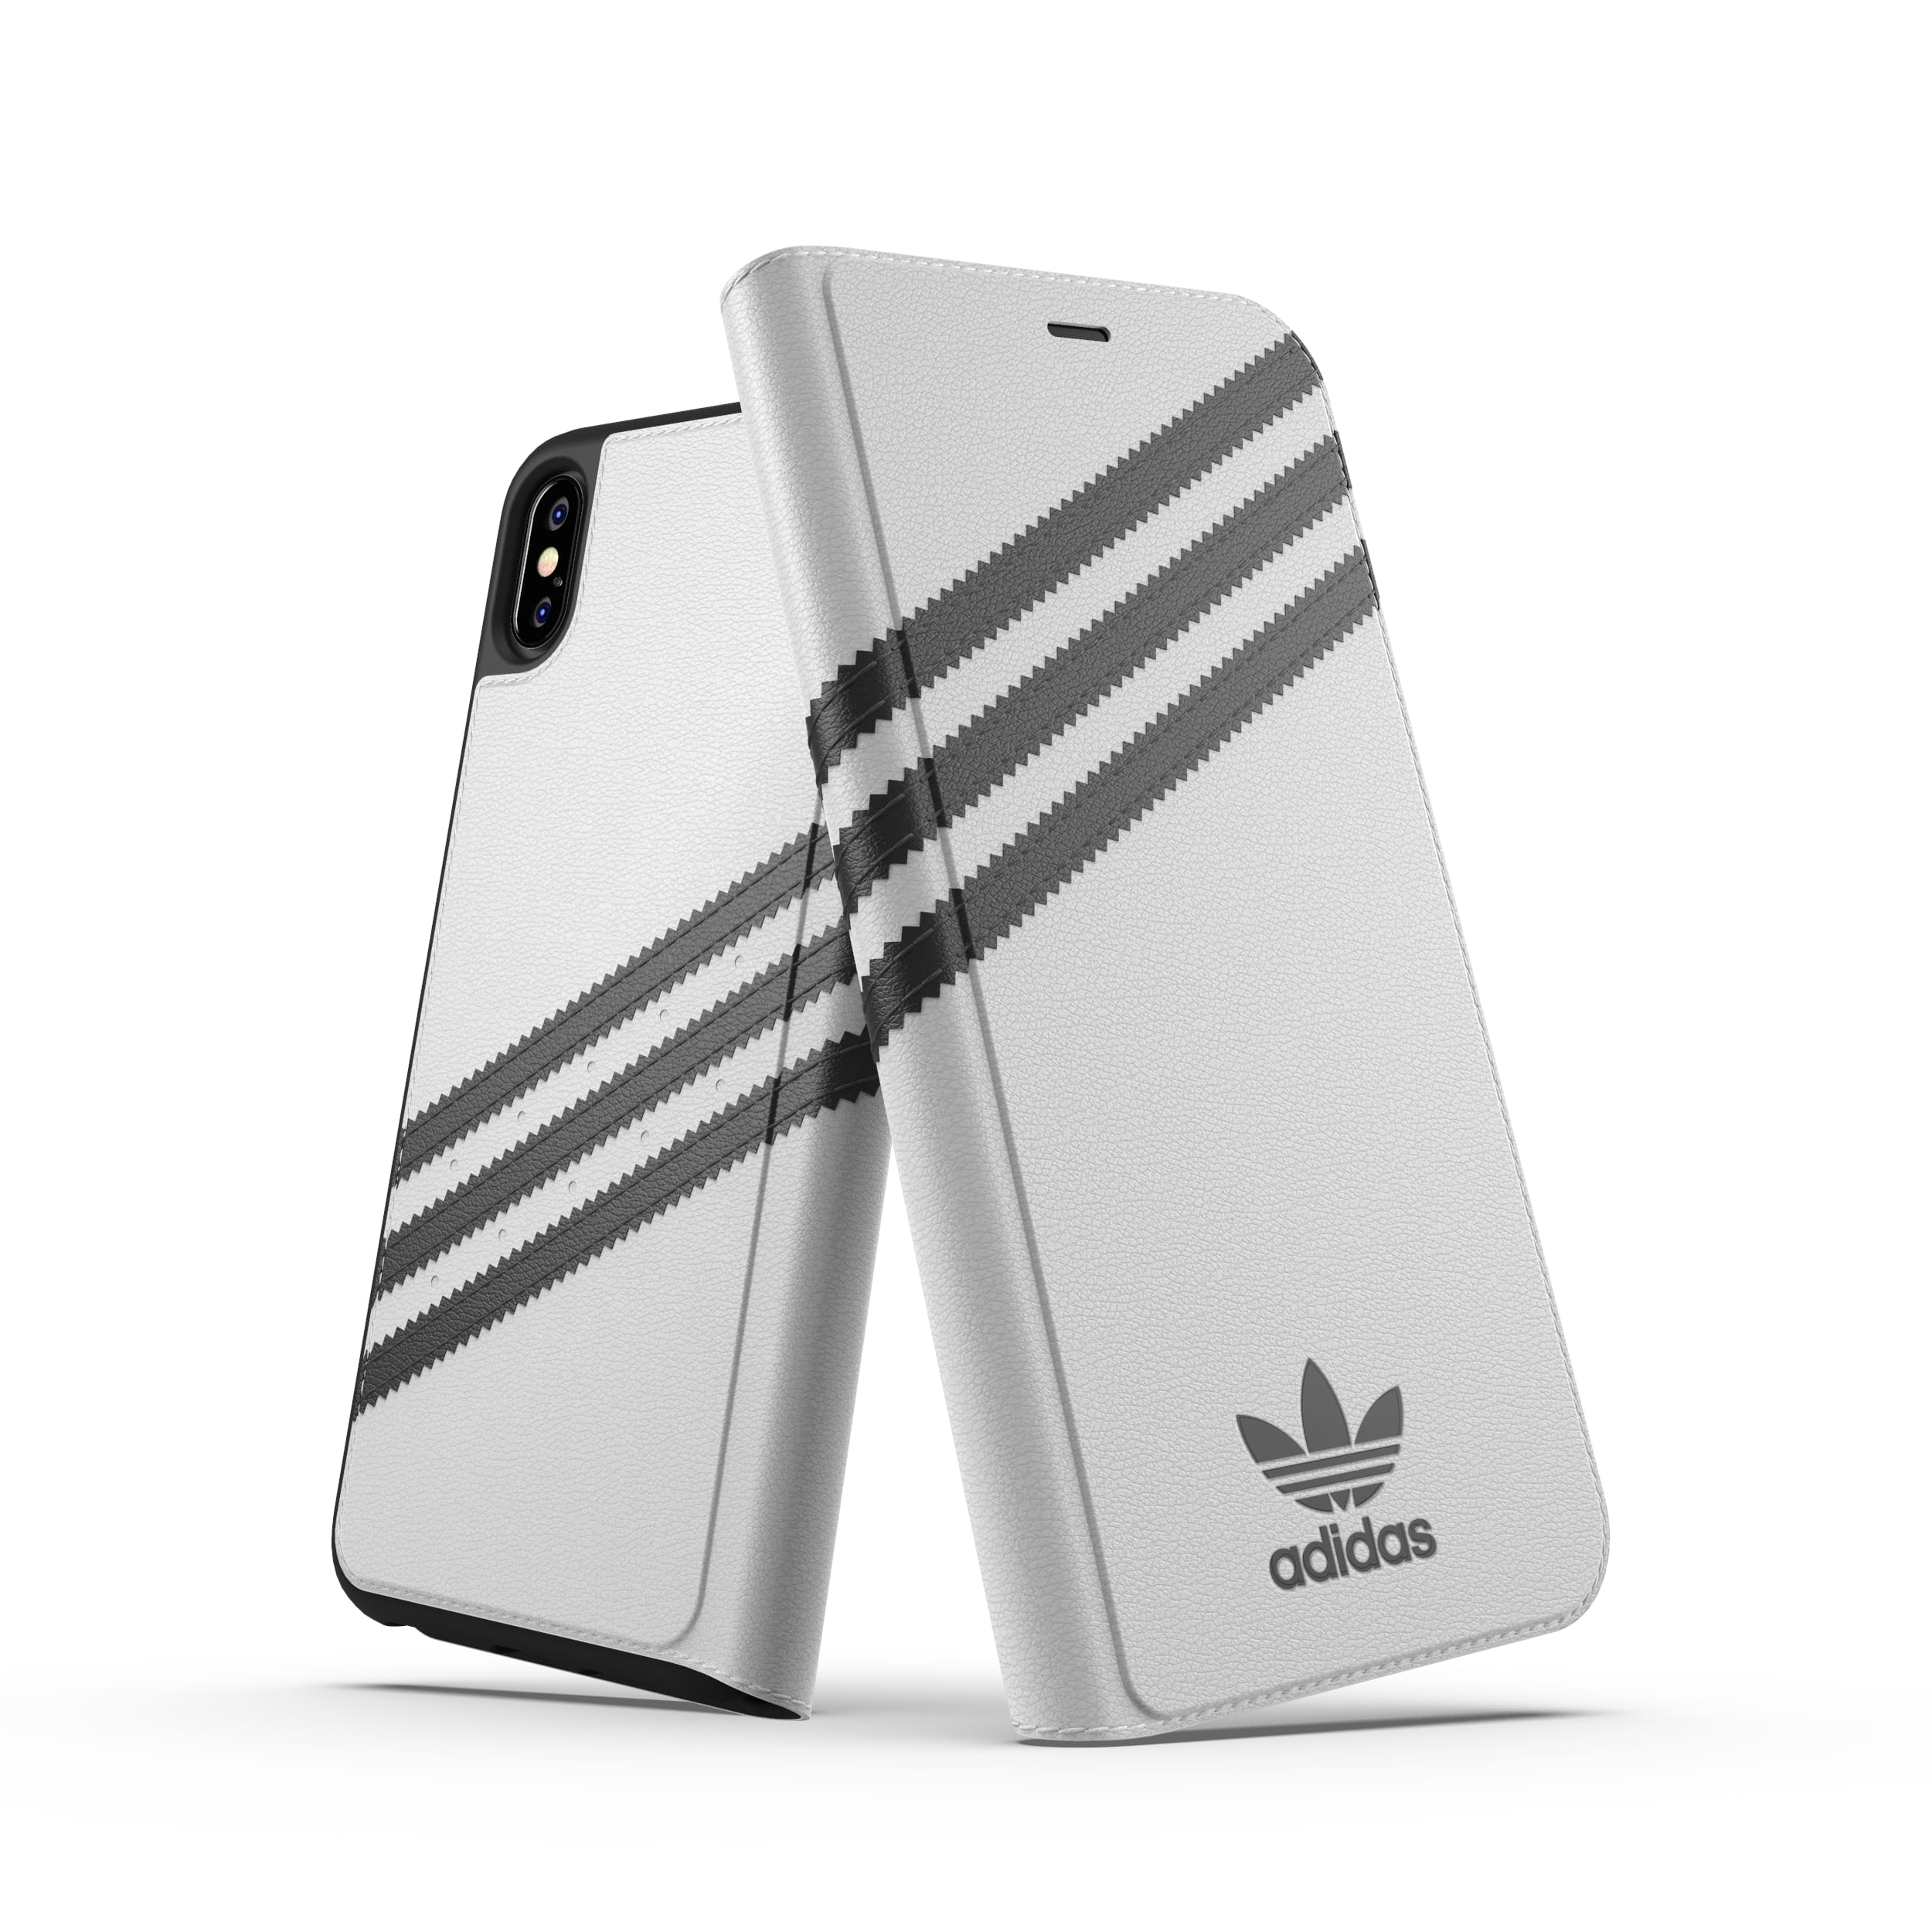 アディダス スマホケース メンズ adidas アディダス スマホケース iPhone XS Max 手帳型ケース アイフォン 手帳 ケース カバー スマホケース 耐衝撃 TPU SAMBA サンバ ホワイト 白 ※当店限定1年保証※